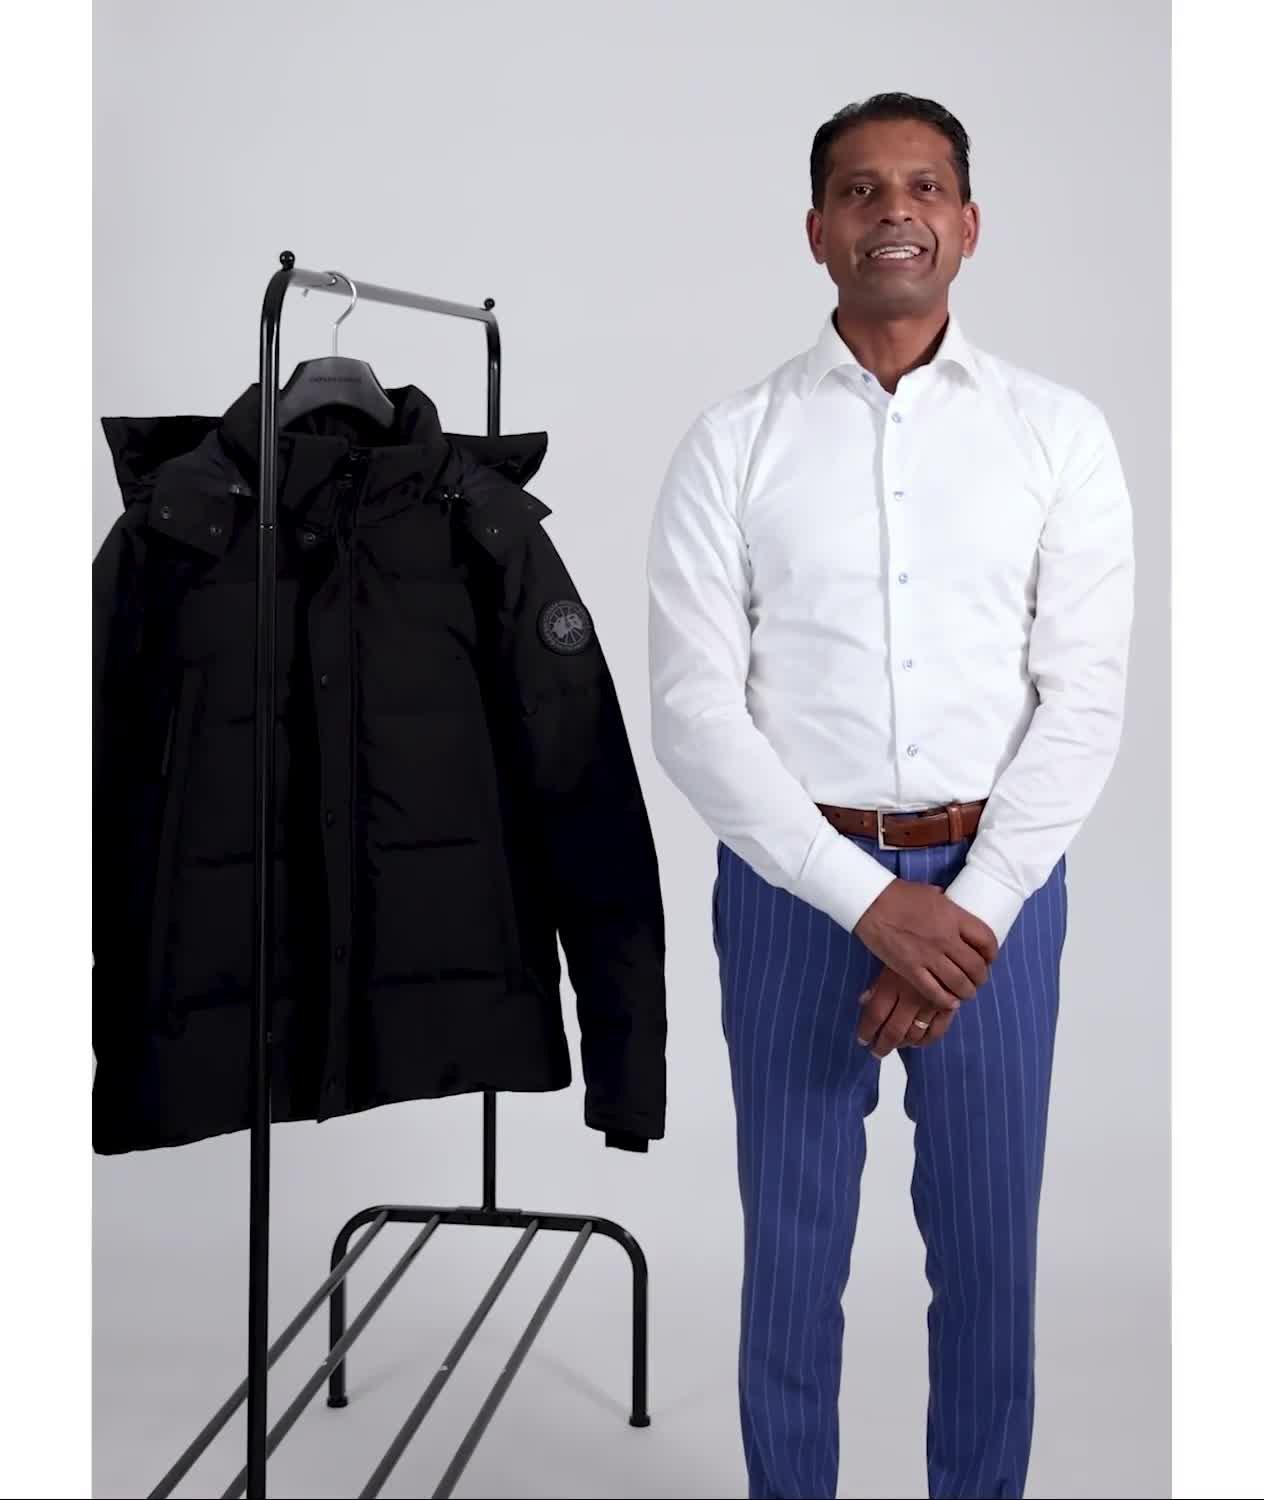 Gray Melange Men Fake Down Outdoor Padded Jacket Silk Cotton